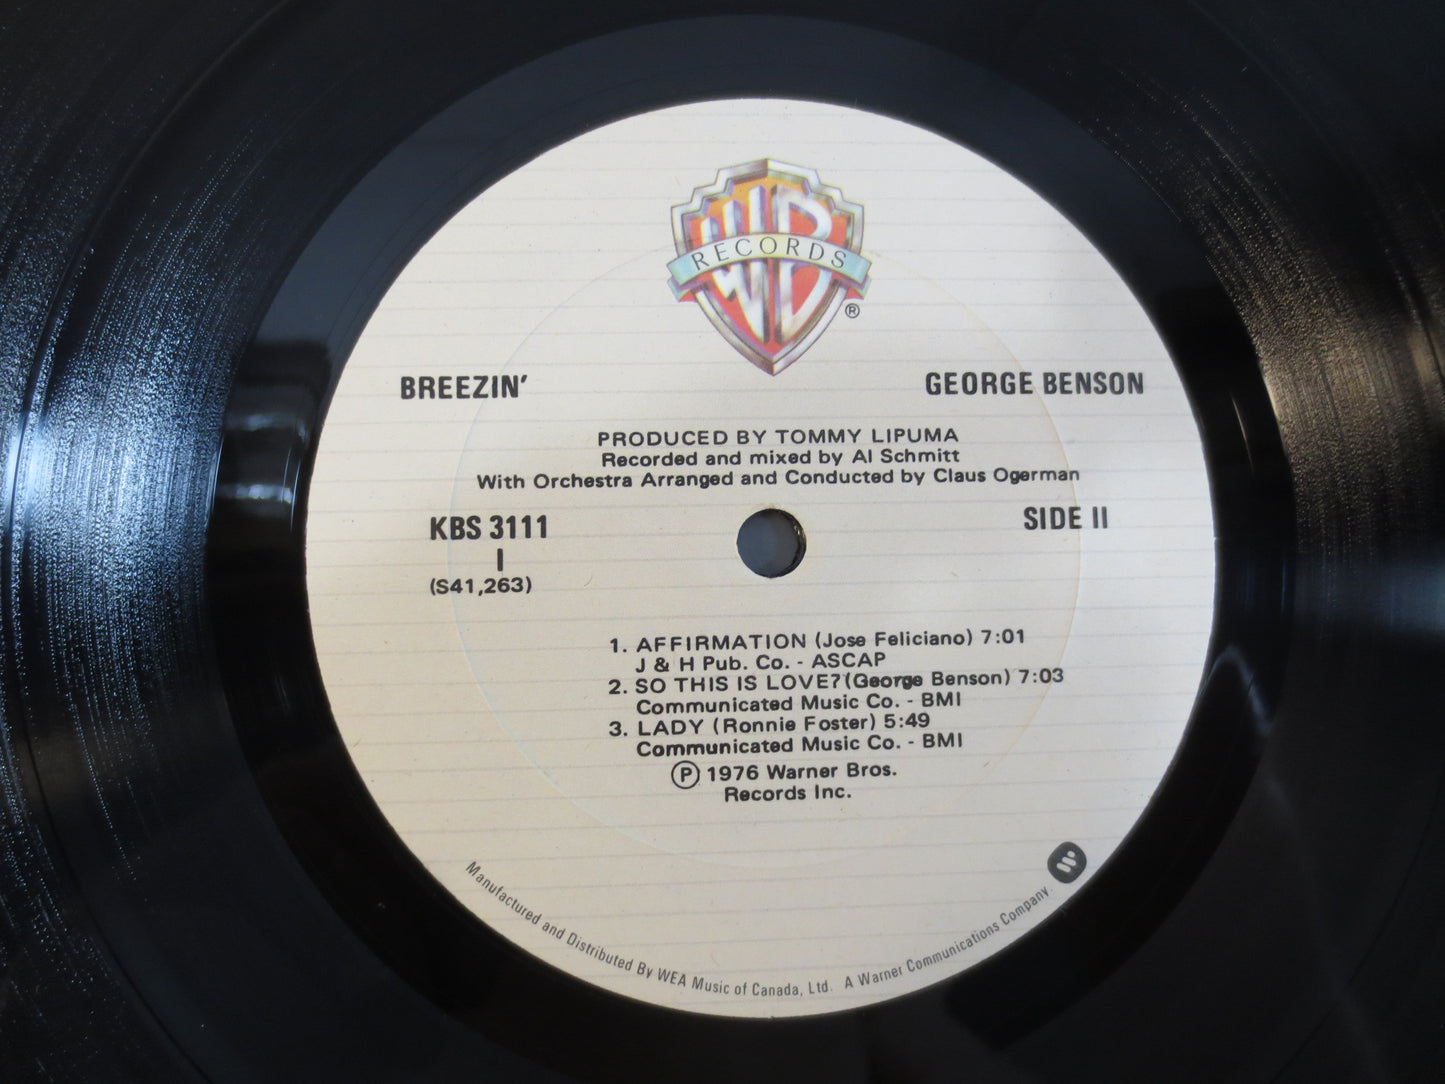 GEORGE BENSON, BREEZIN', George Benson Record, George Benson Album, George Benson Lp, Jazz Record, Jazz Vinyl, 1976 Records